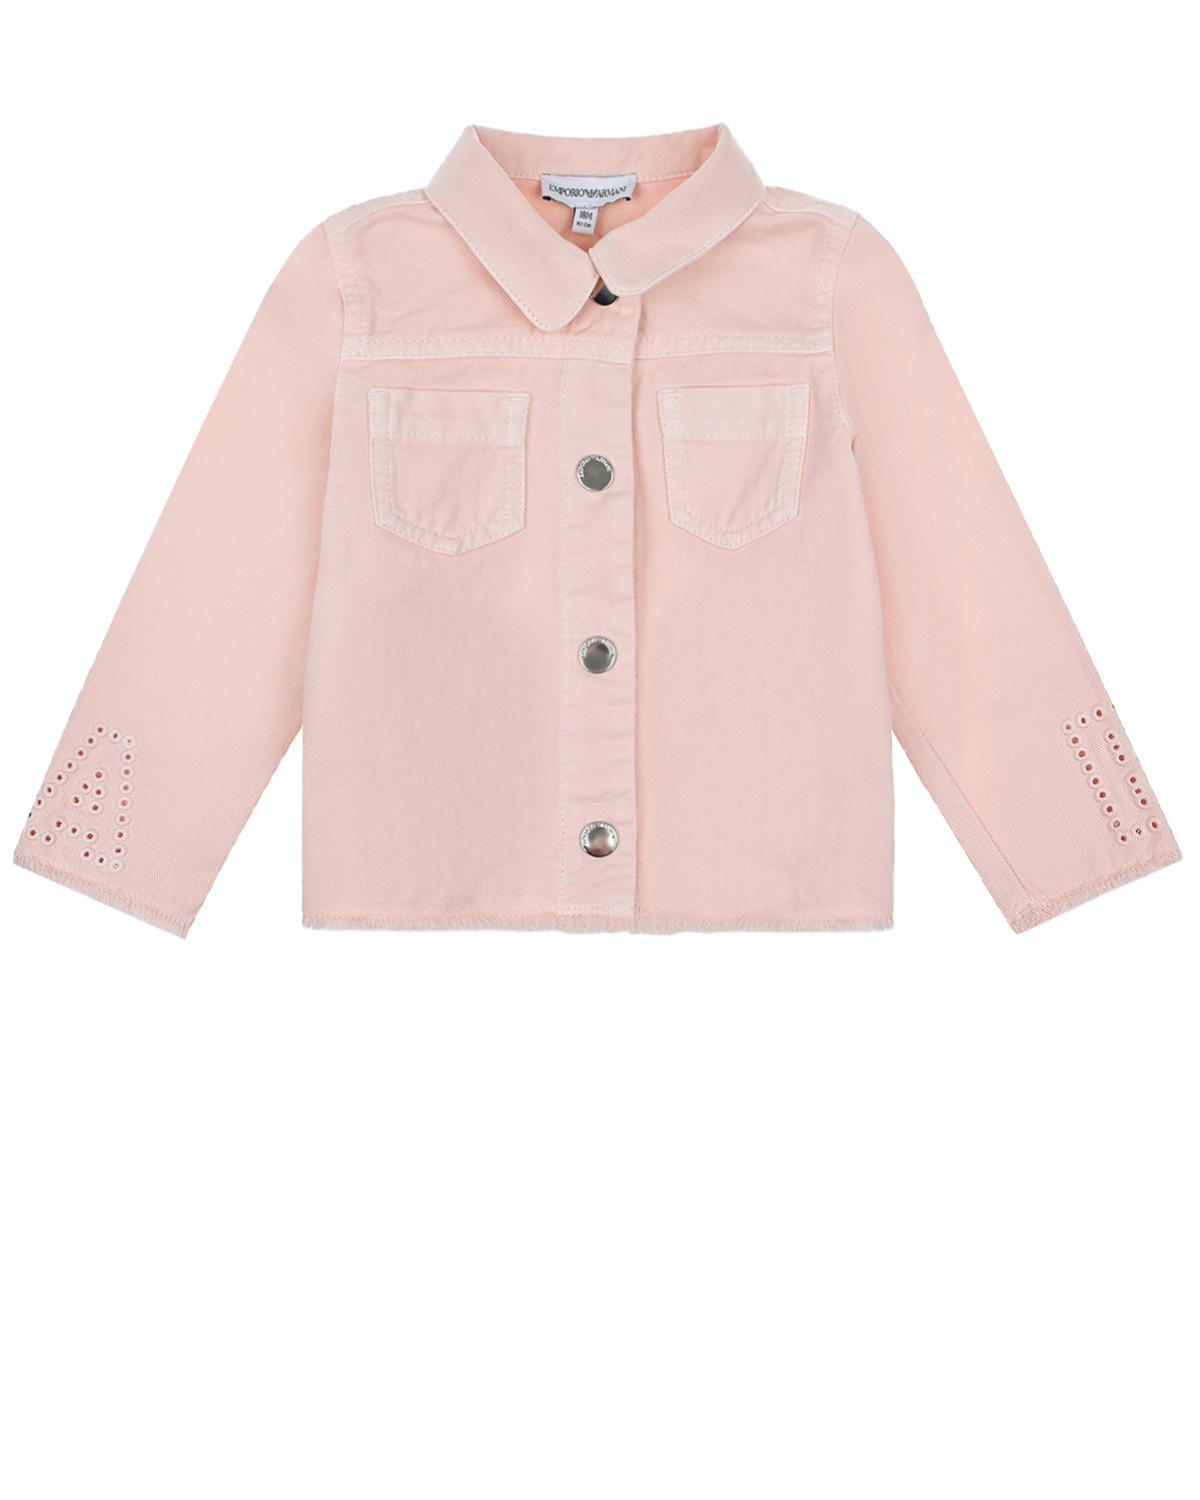 Легкая куртка на пуговицах Emporio Armani детская, размер 86, цвет бежевый - фото 1